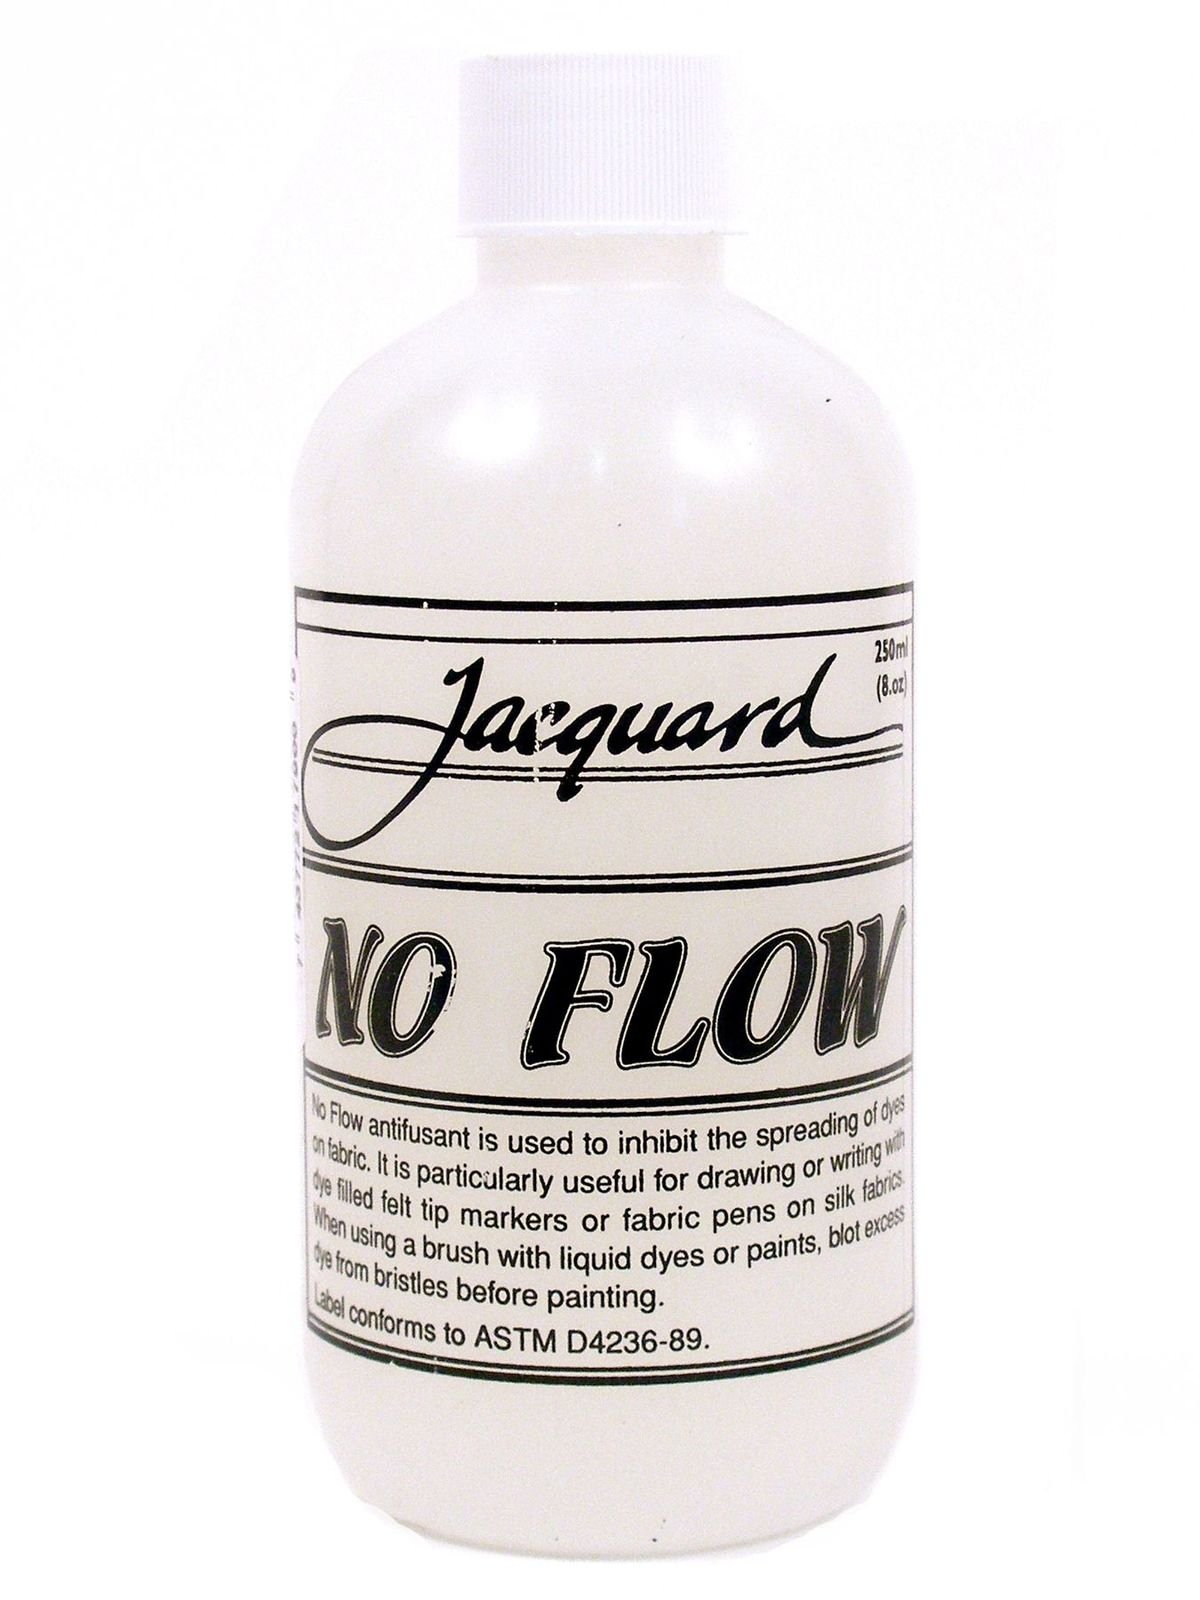 Jacquard - No Flow